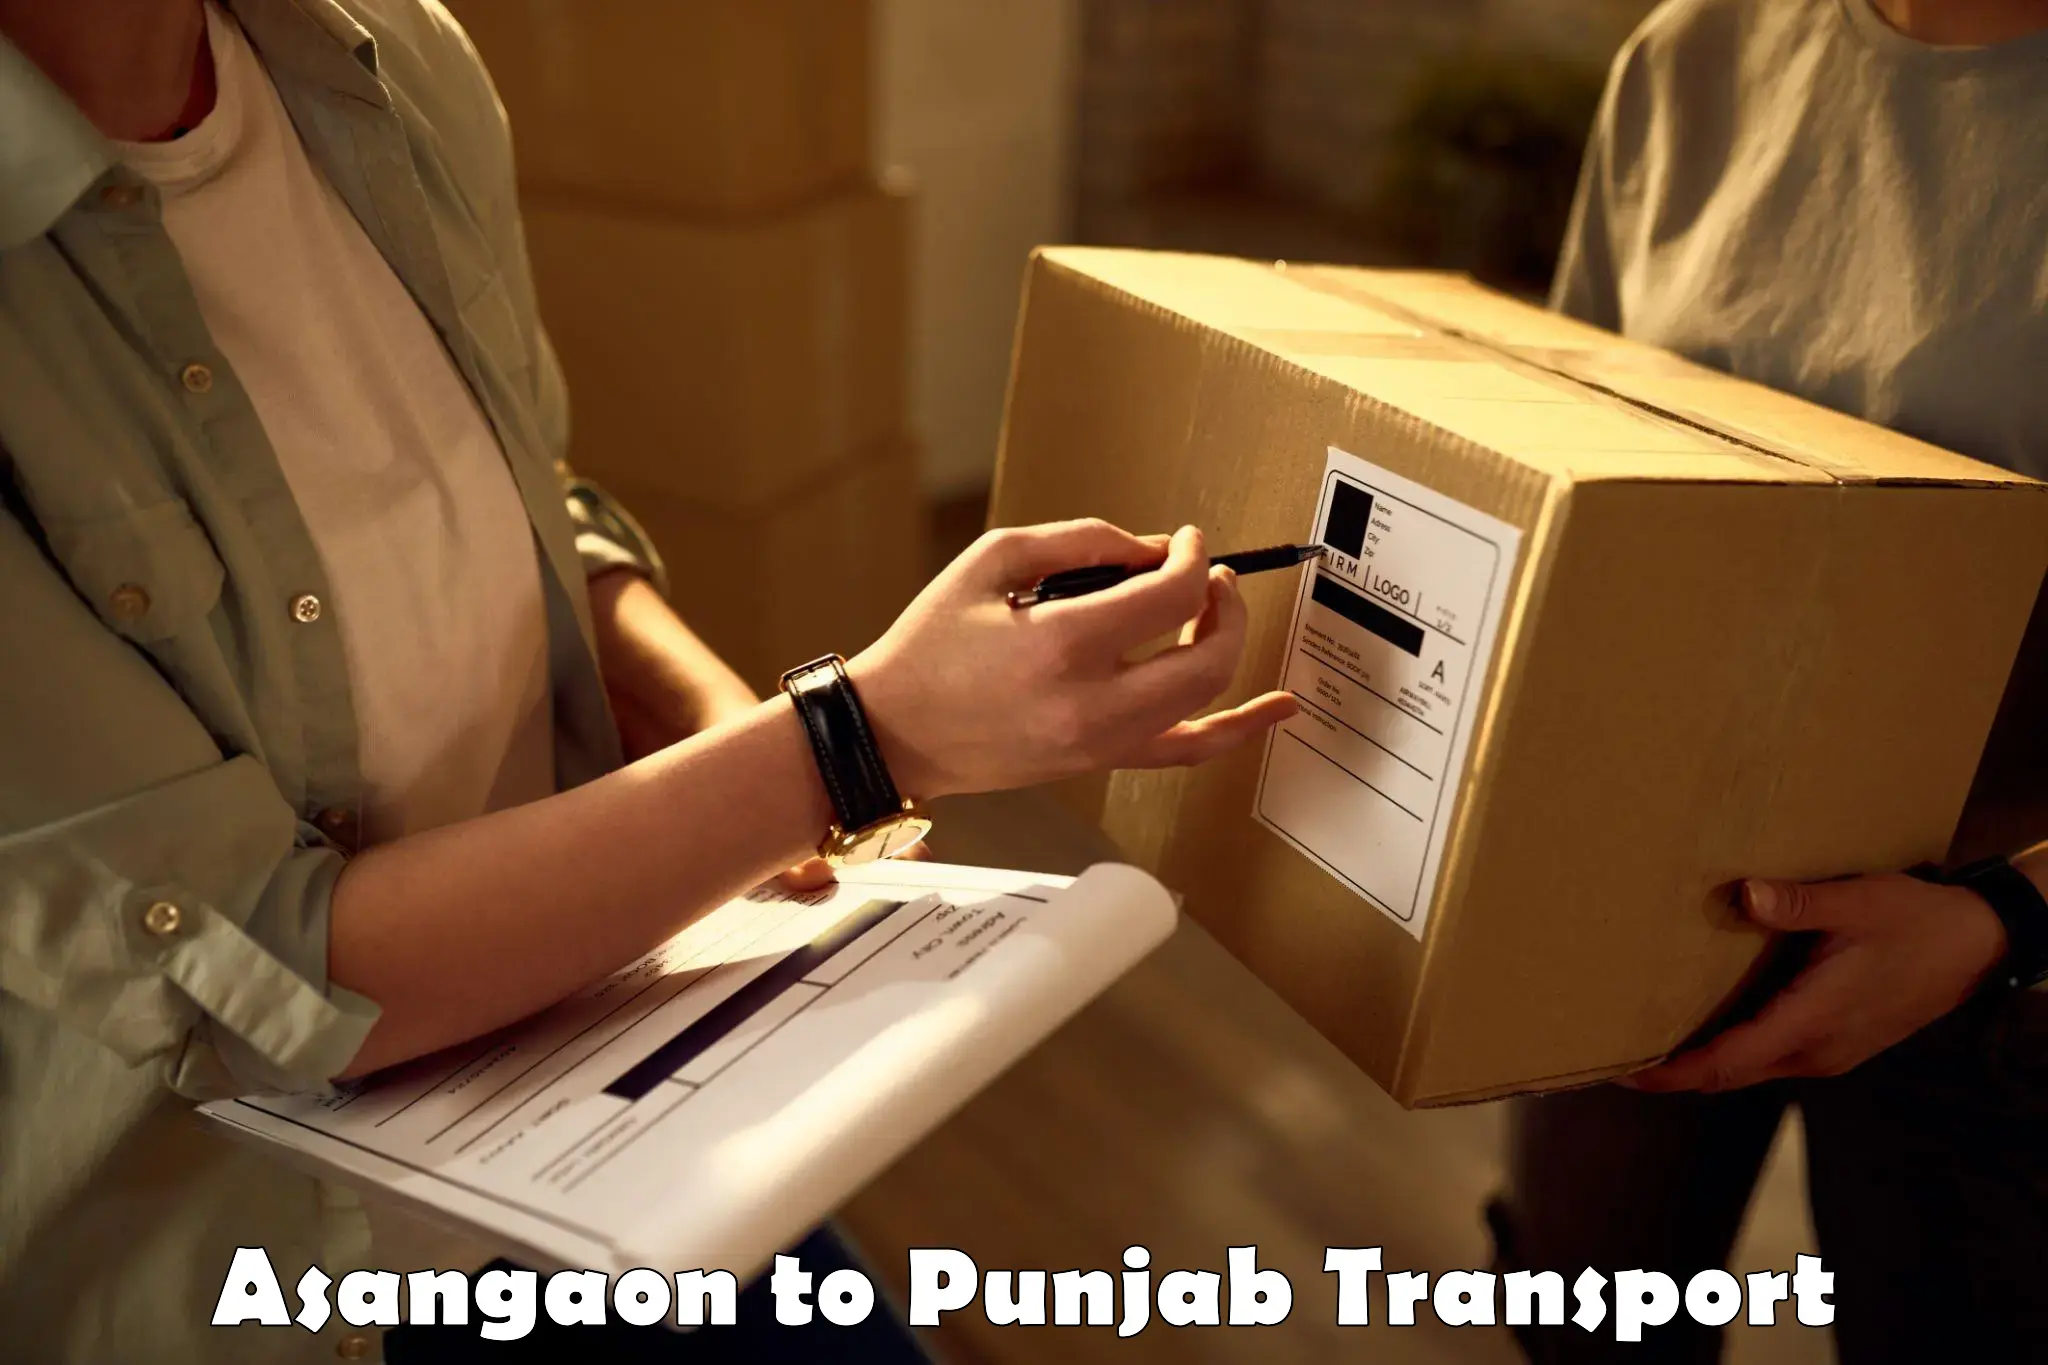 Nationwide transport services Asangaon to Punjab